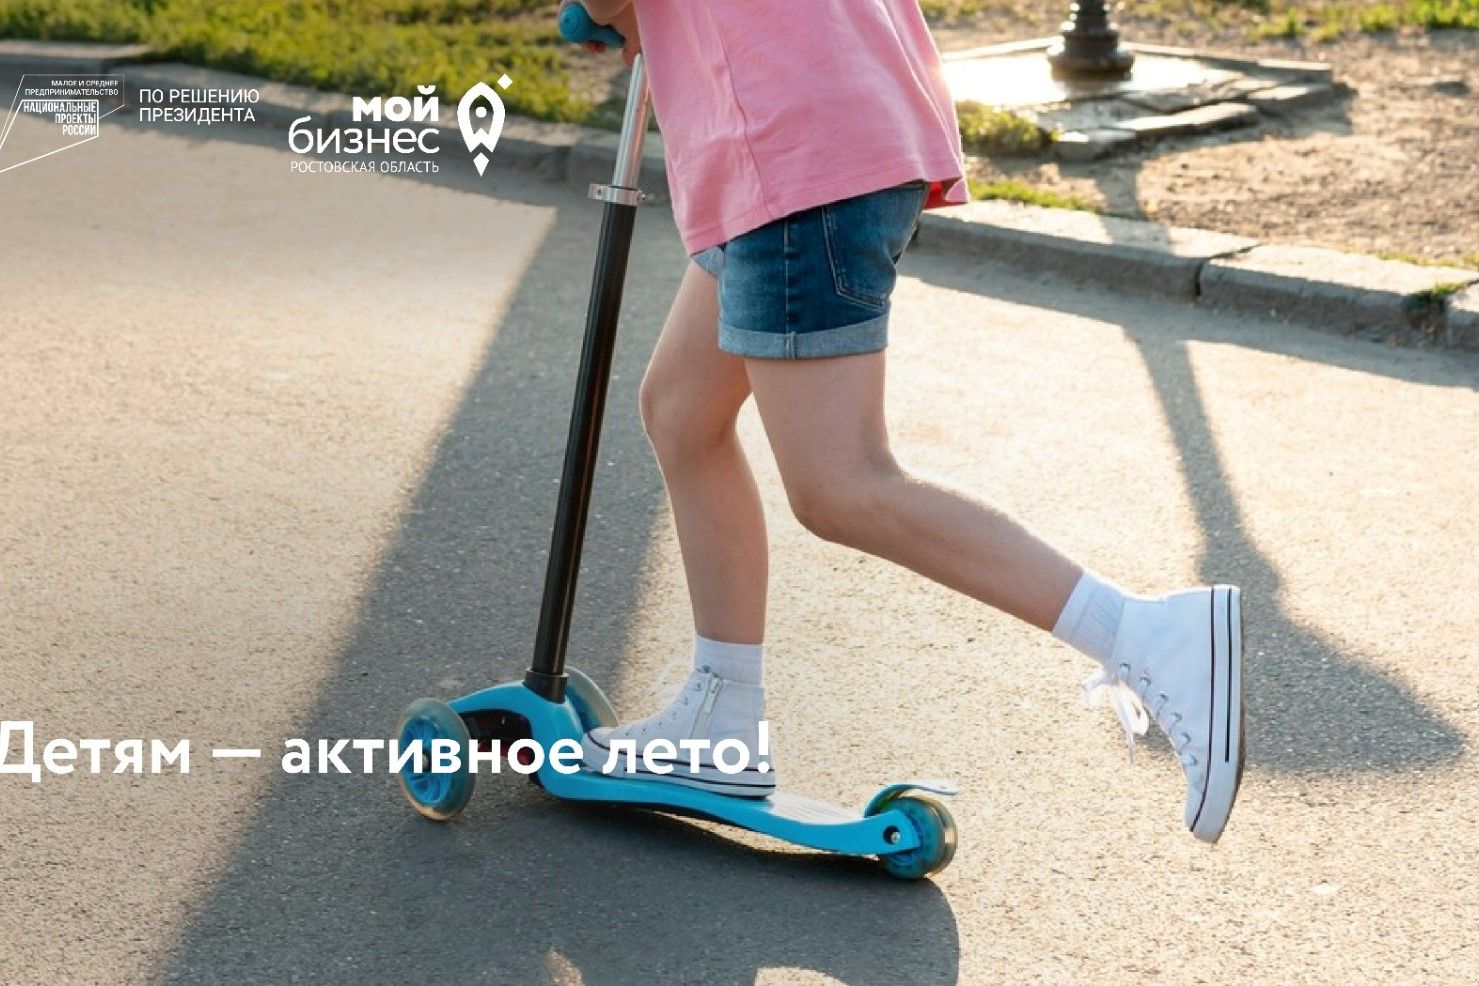 В Ростовской области стартовал сбор всего необходимого для активного и творческого детского отдыха летом